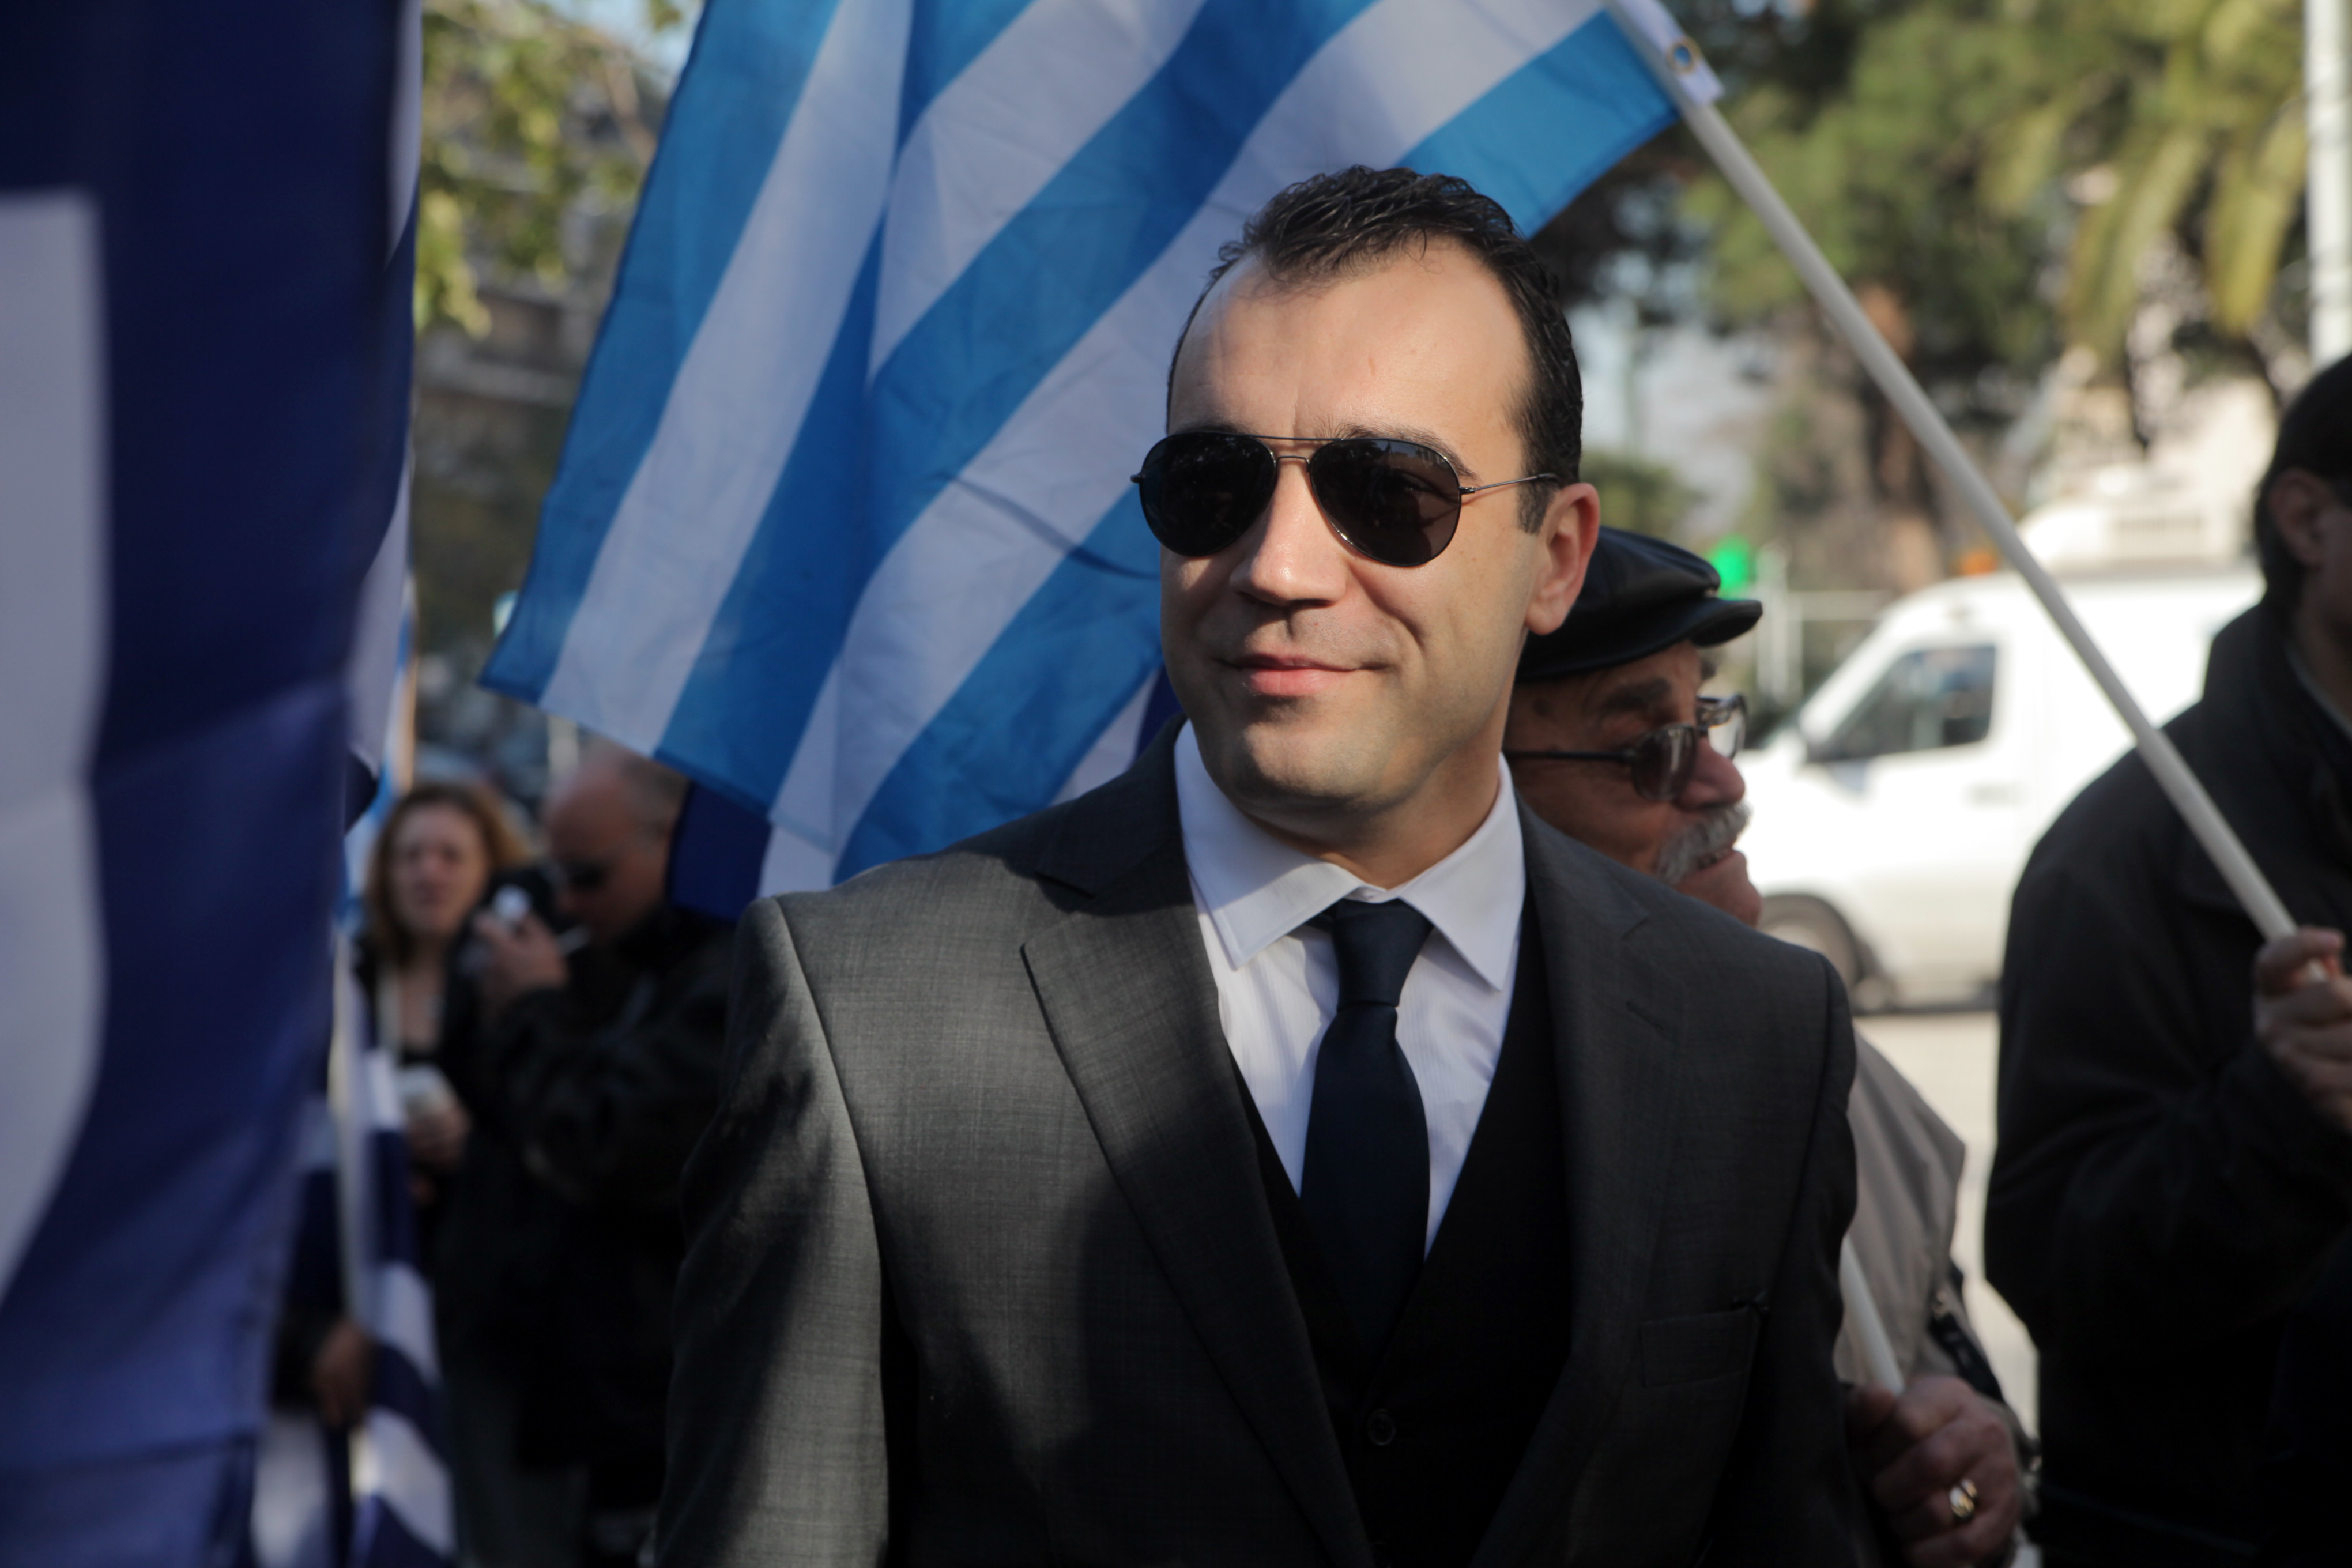 Ο προφυλακισμένος χρυσαυγίτης βουλευτής Π. Ηλιόπουλος υποψήφιος περιφερειάρχης Θεσσαλίας